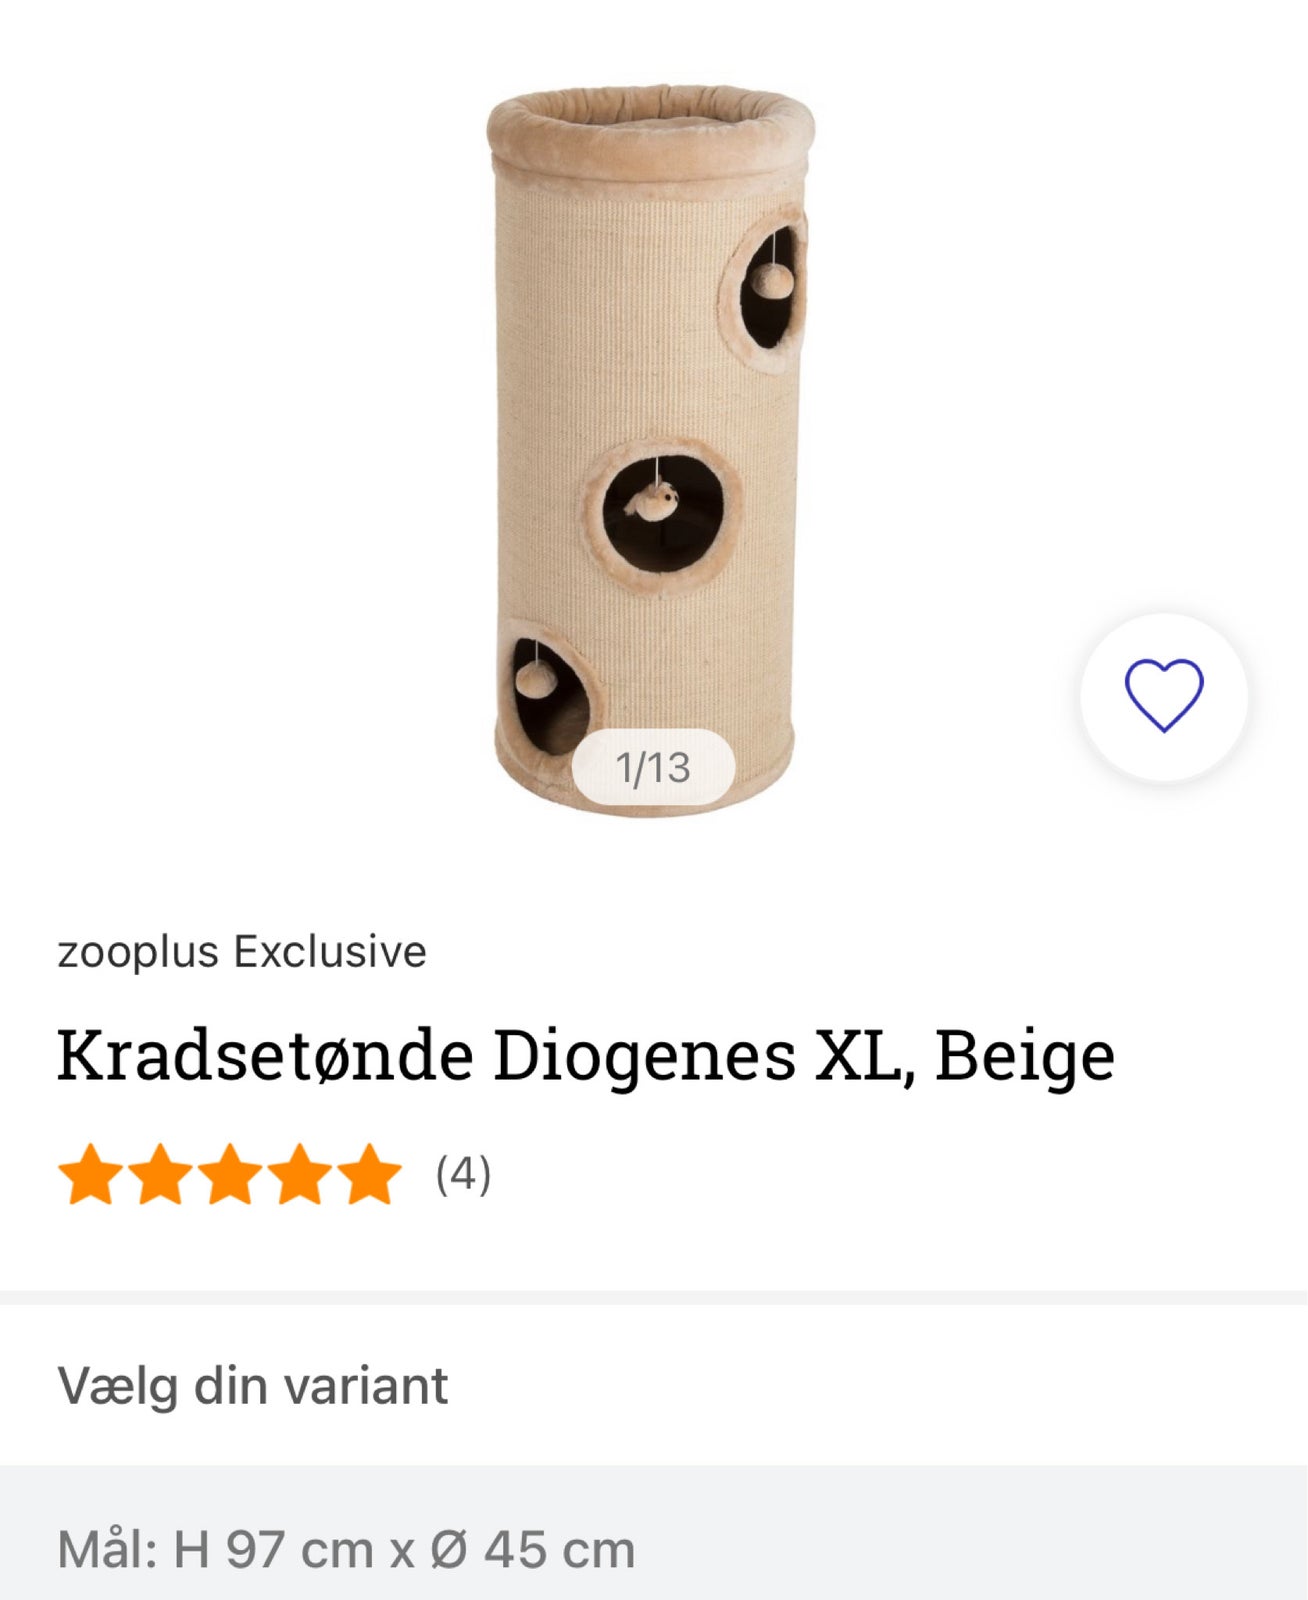 Kradsetræ, Kradsetønde Diogenes XL, beige